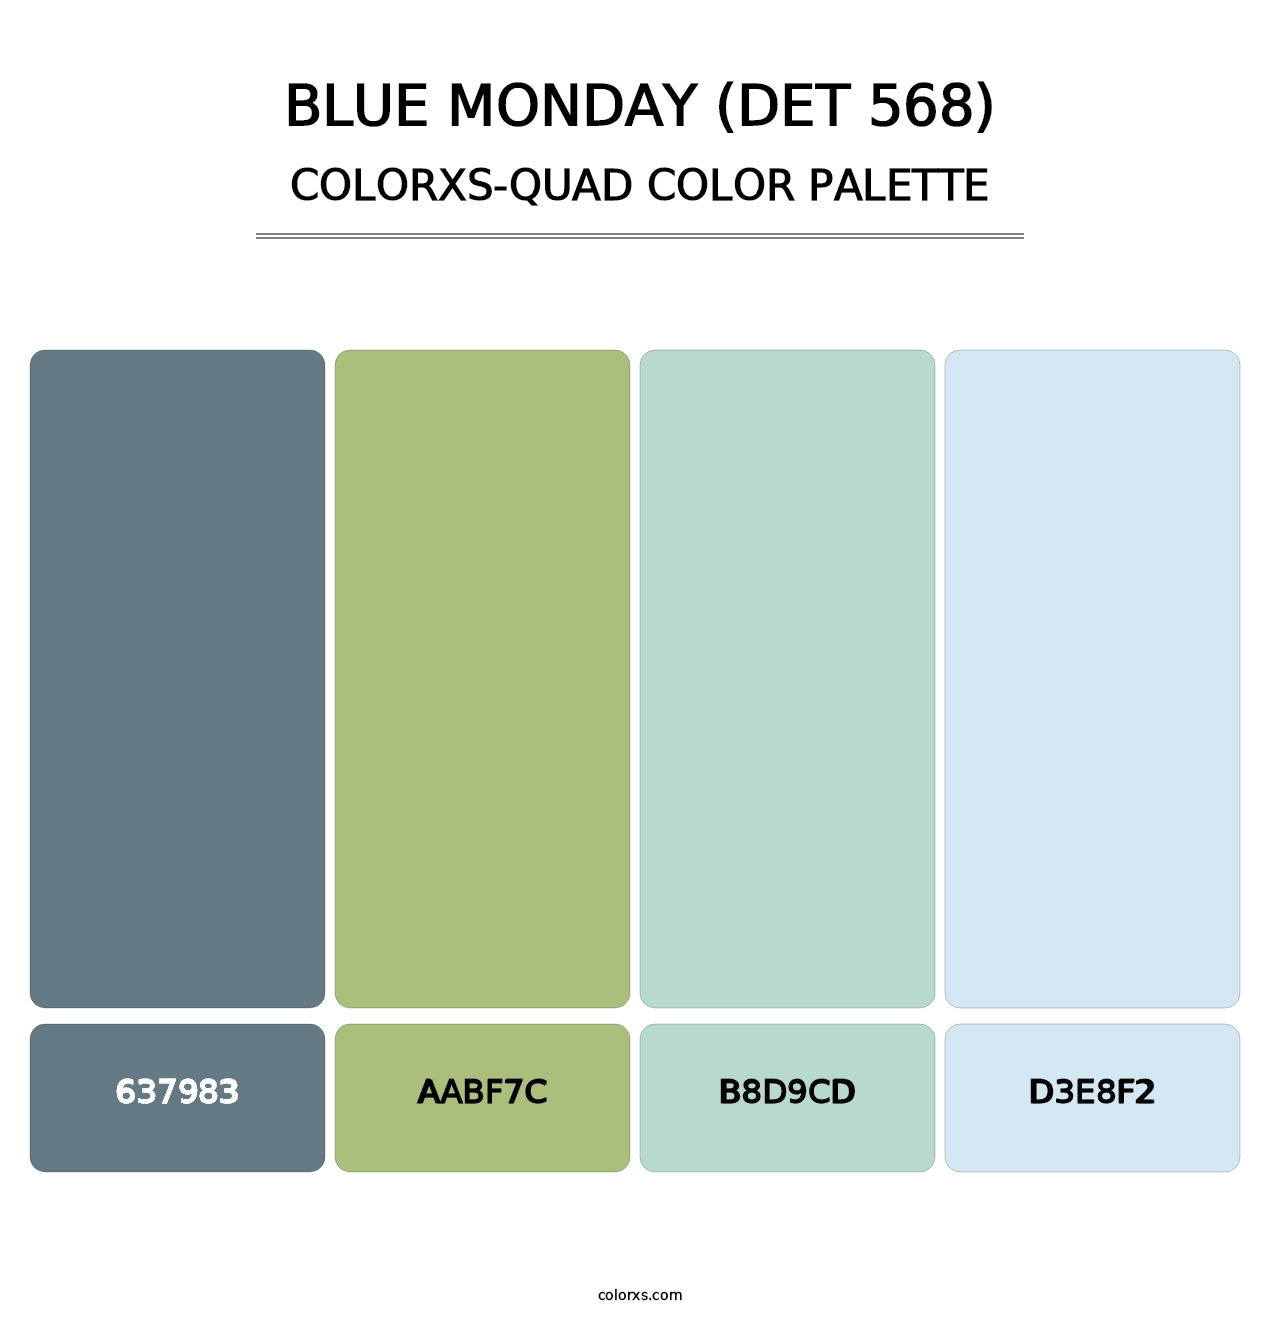 Blue Monday (DET 568) - Colorxs Quad Palette